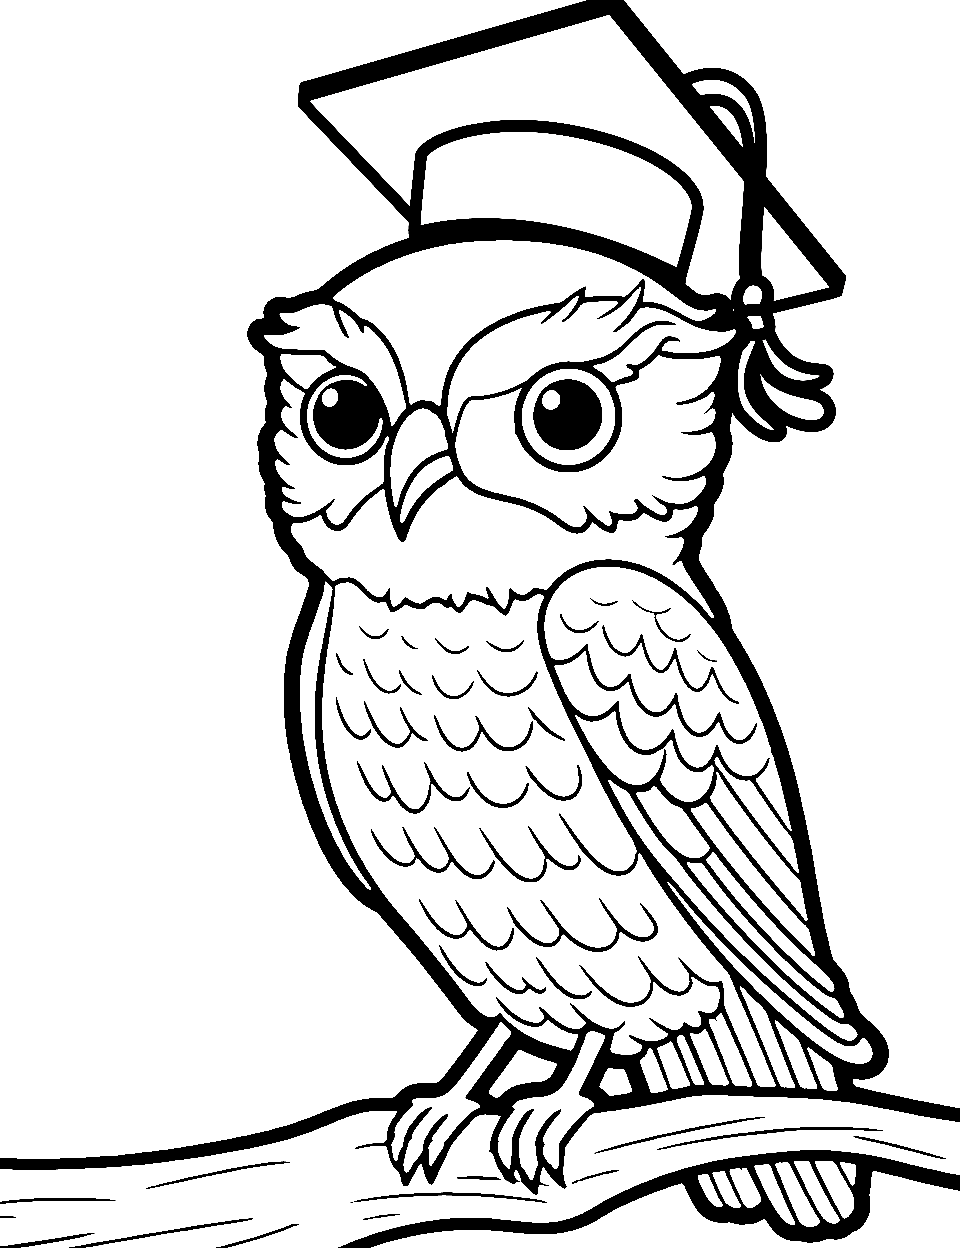 Graduation Owl Coloring Page - An owl wearing a graduation cap, symbolizing achievement.